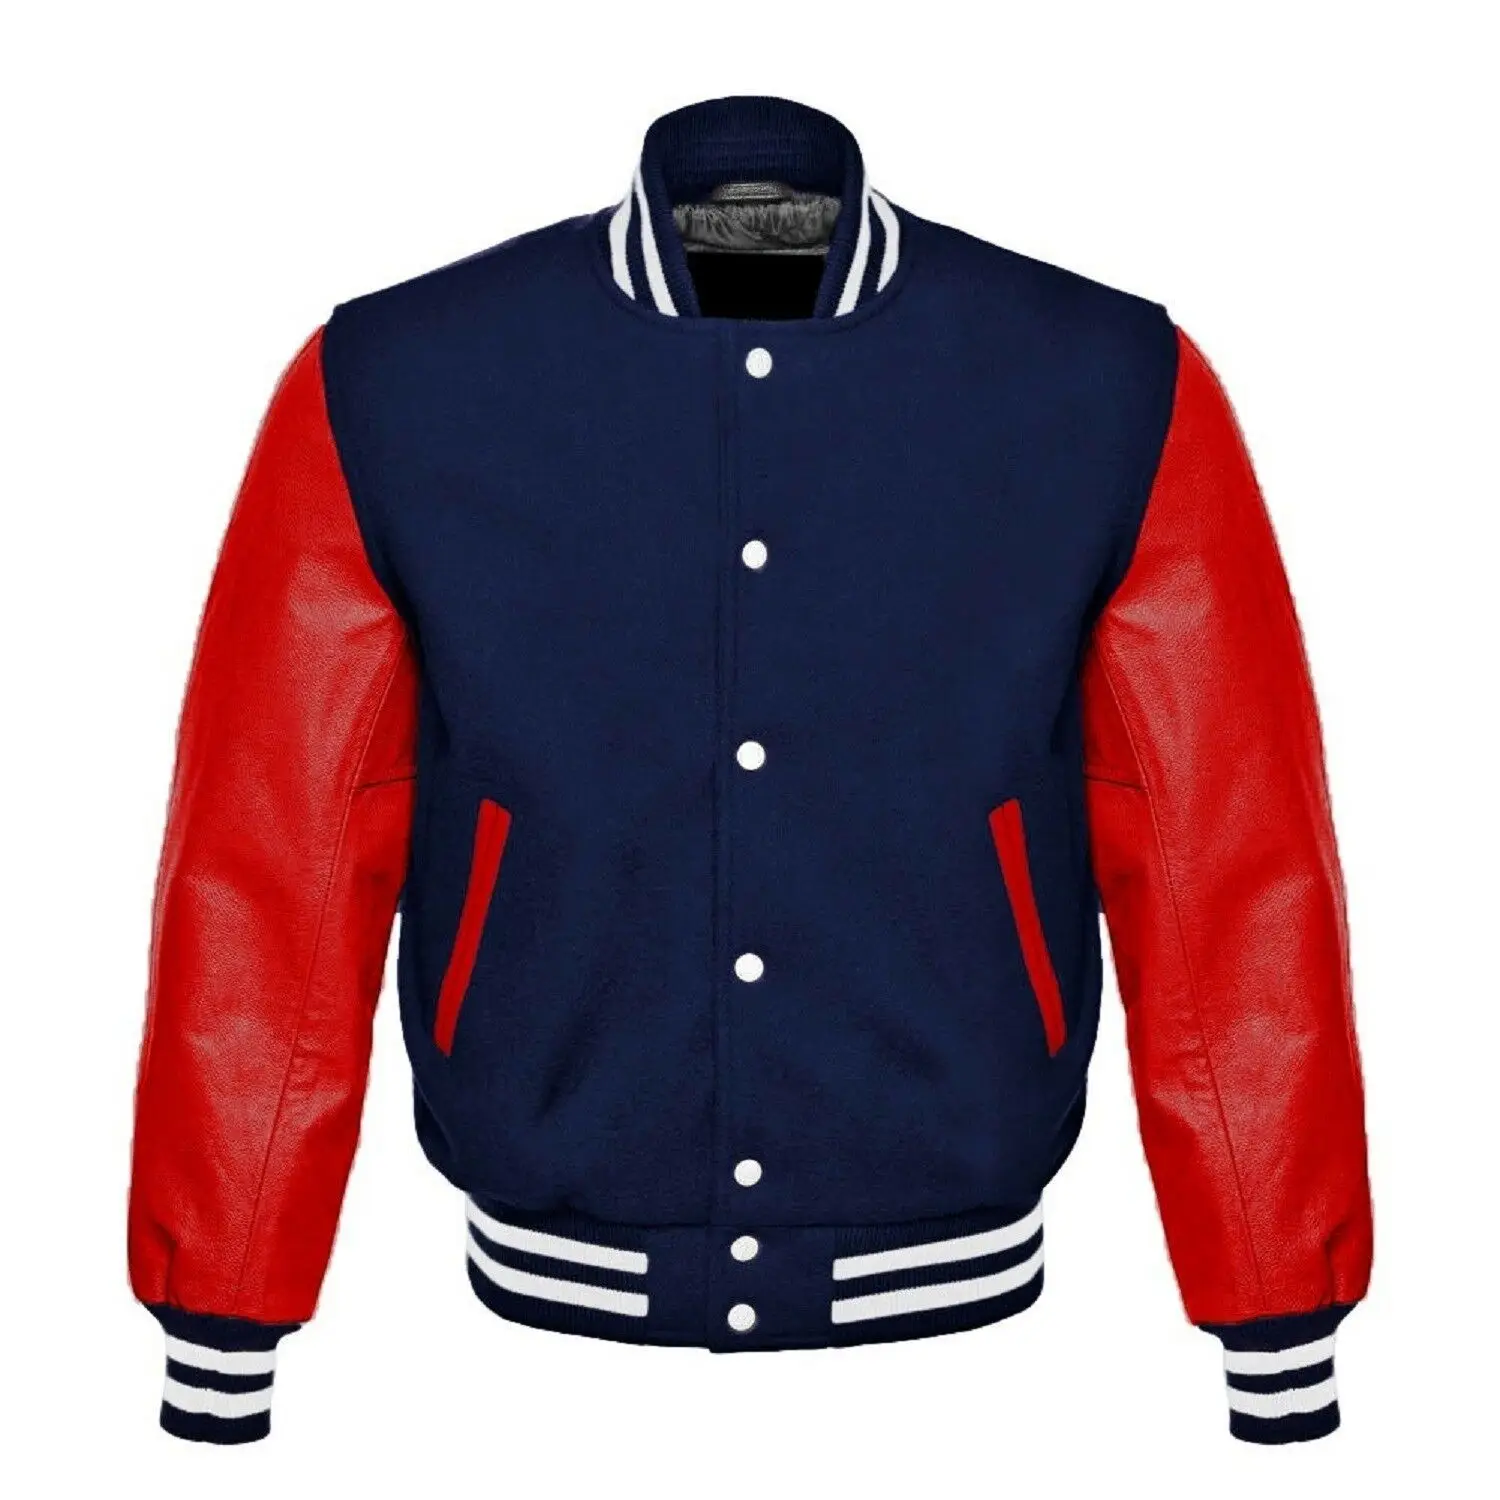 Jacket Makers Varsity Letterman Jacket